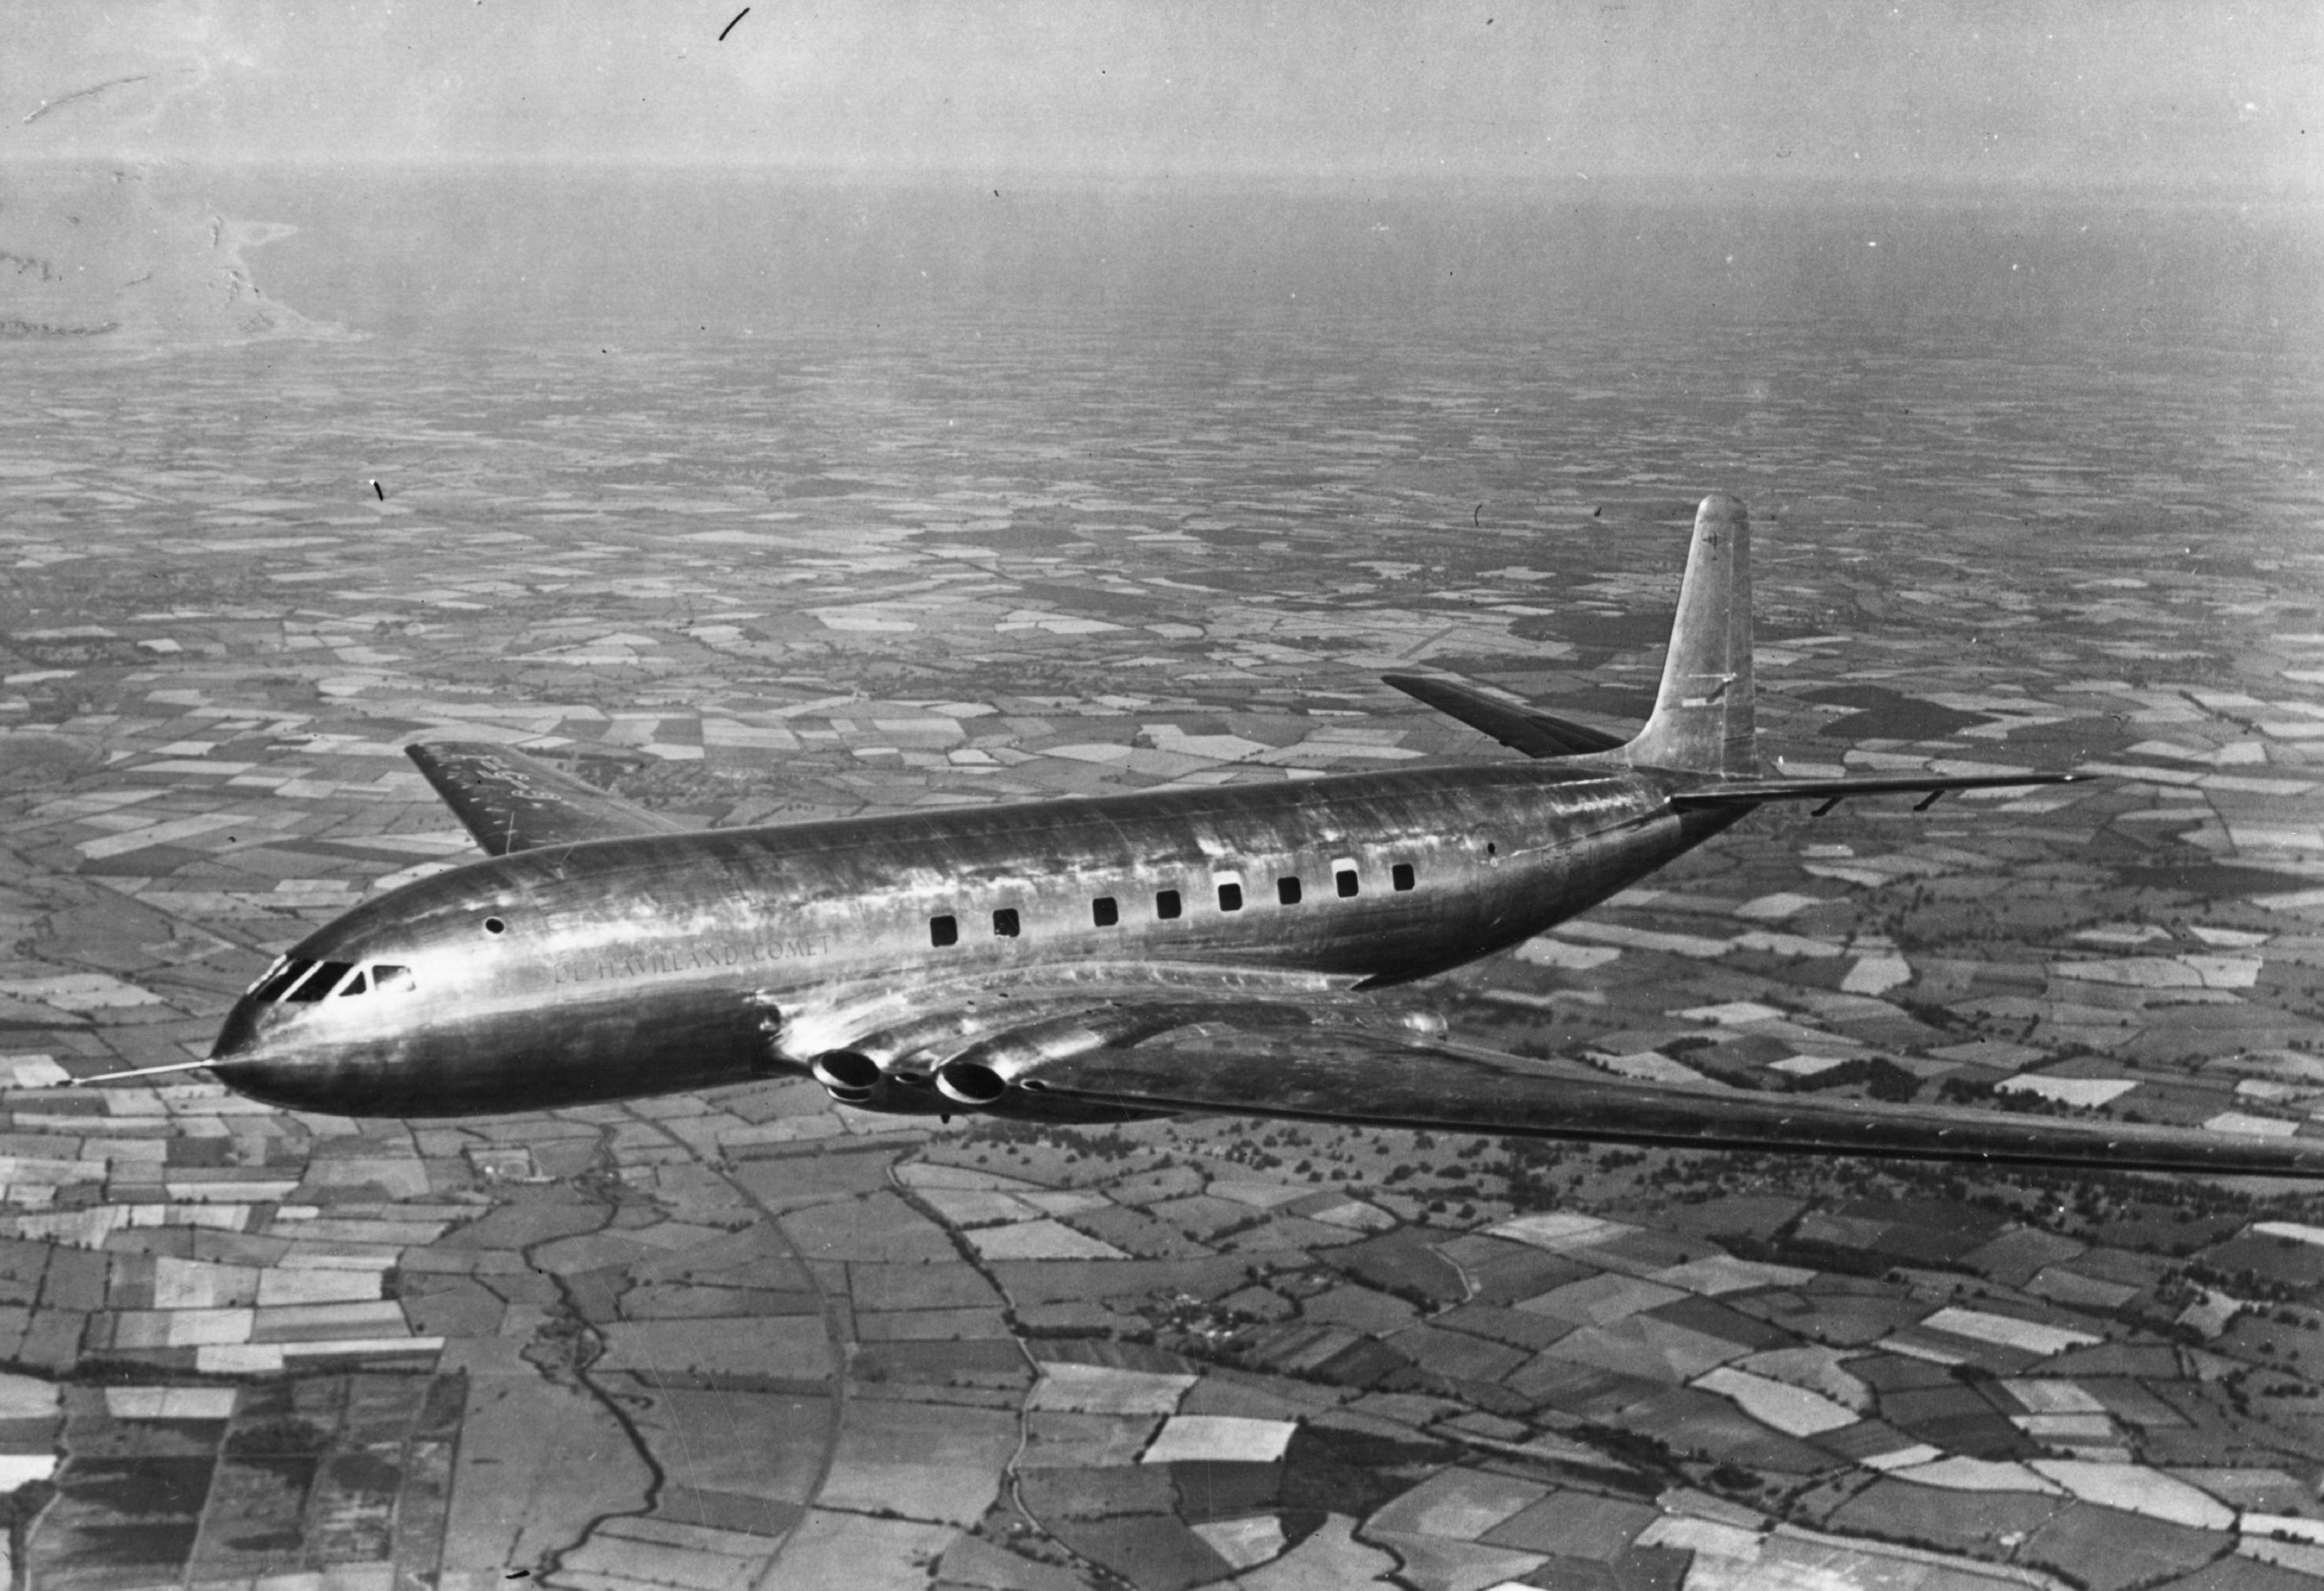 <p>de Havilland DH.106 Comet стал первым в мире коммерческим реактивным авиалайнером, выполняющим рейсы малой и средней протяженности. Регулярные реактивные полеты начались в 1952 году. 2 мая борт G-ALYP покинул Лондон, чтобы совершить полет согласно расписанию по маршруту Лондон&nbsp;&mdash; Рим&nbsp;&mdash; Бейрут&nbsp;&mdash; Хартум&nbsp;&mdash; Энтеббе&nbsp;&mdash; Ливингстон&nbsp;&mdash; Йоханнесбург</p>